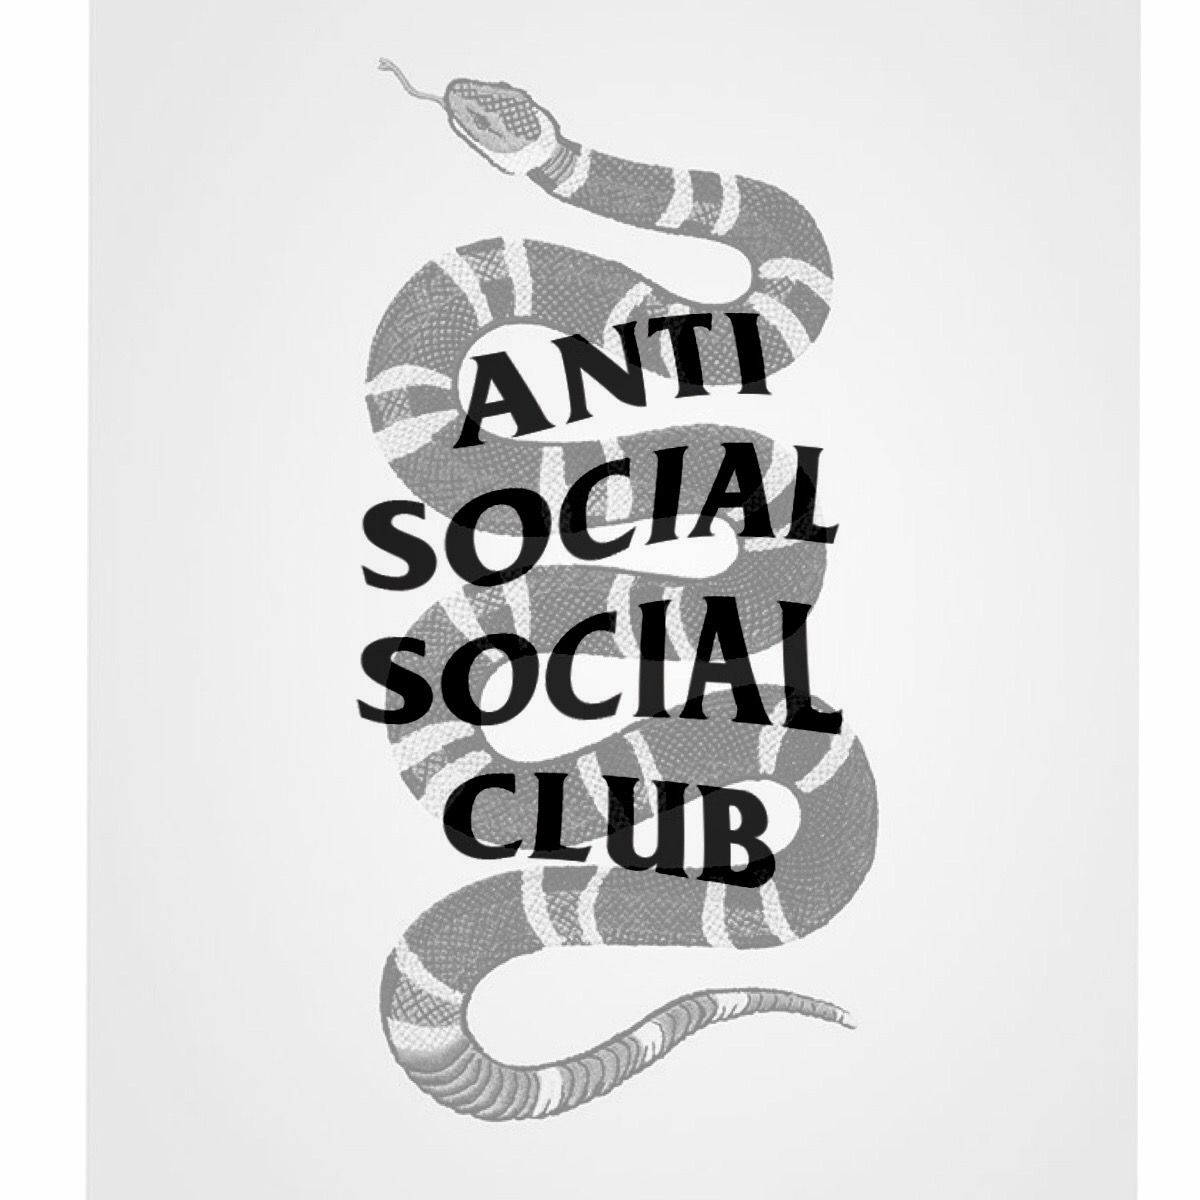 fond d'écran anti social social club,police de caractère,affiche,calligraphie,serpent,reptile